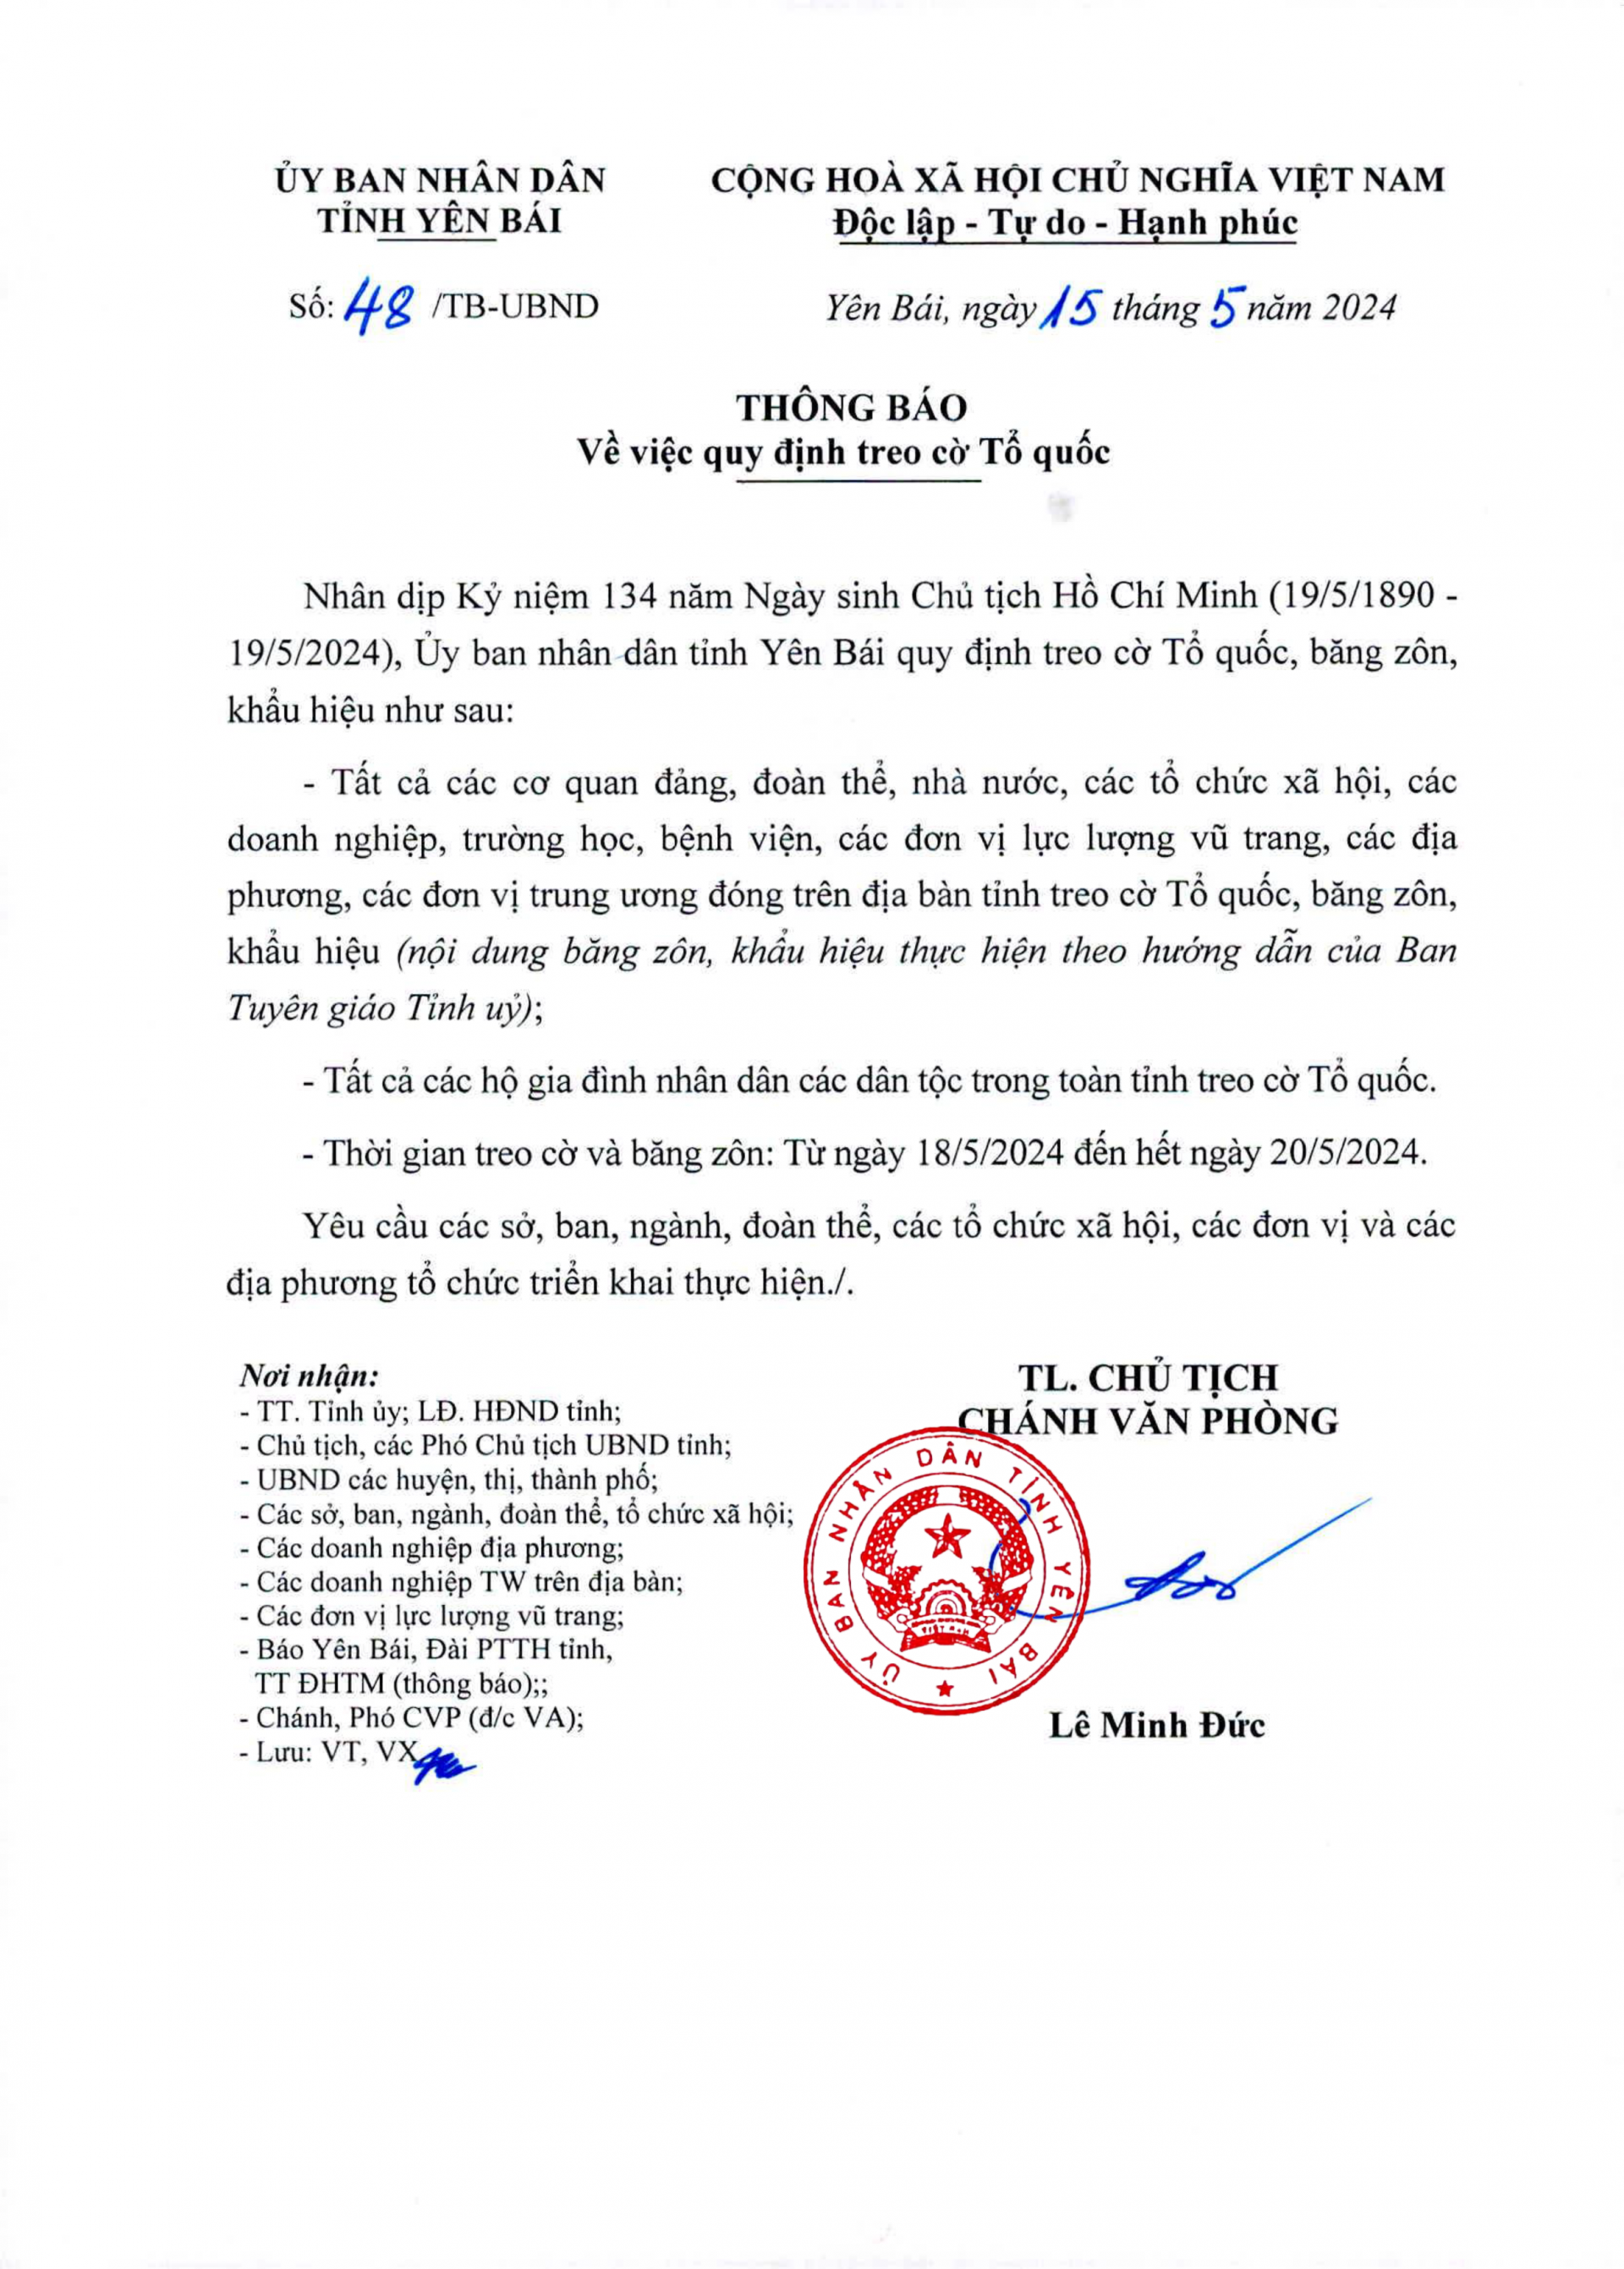 Quy định treo cờ Tổ quốc nhân dịp Kỷ niệm 134 năm Ngày sinh Chủ tịch Hồ Chí Minh